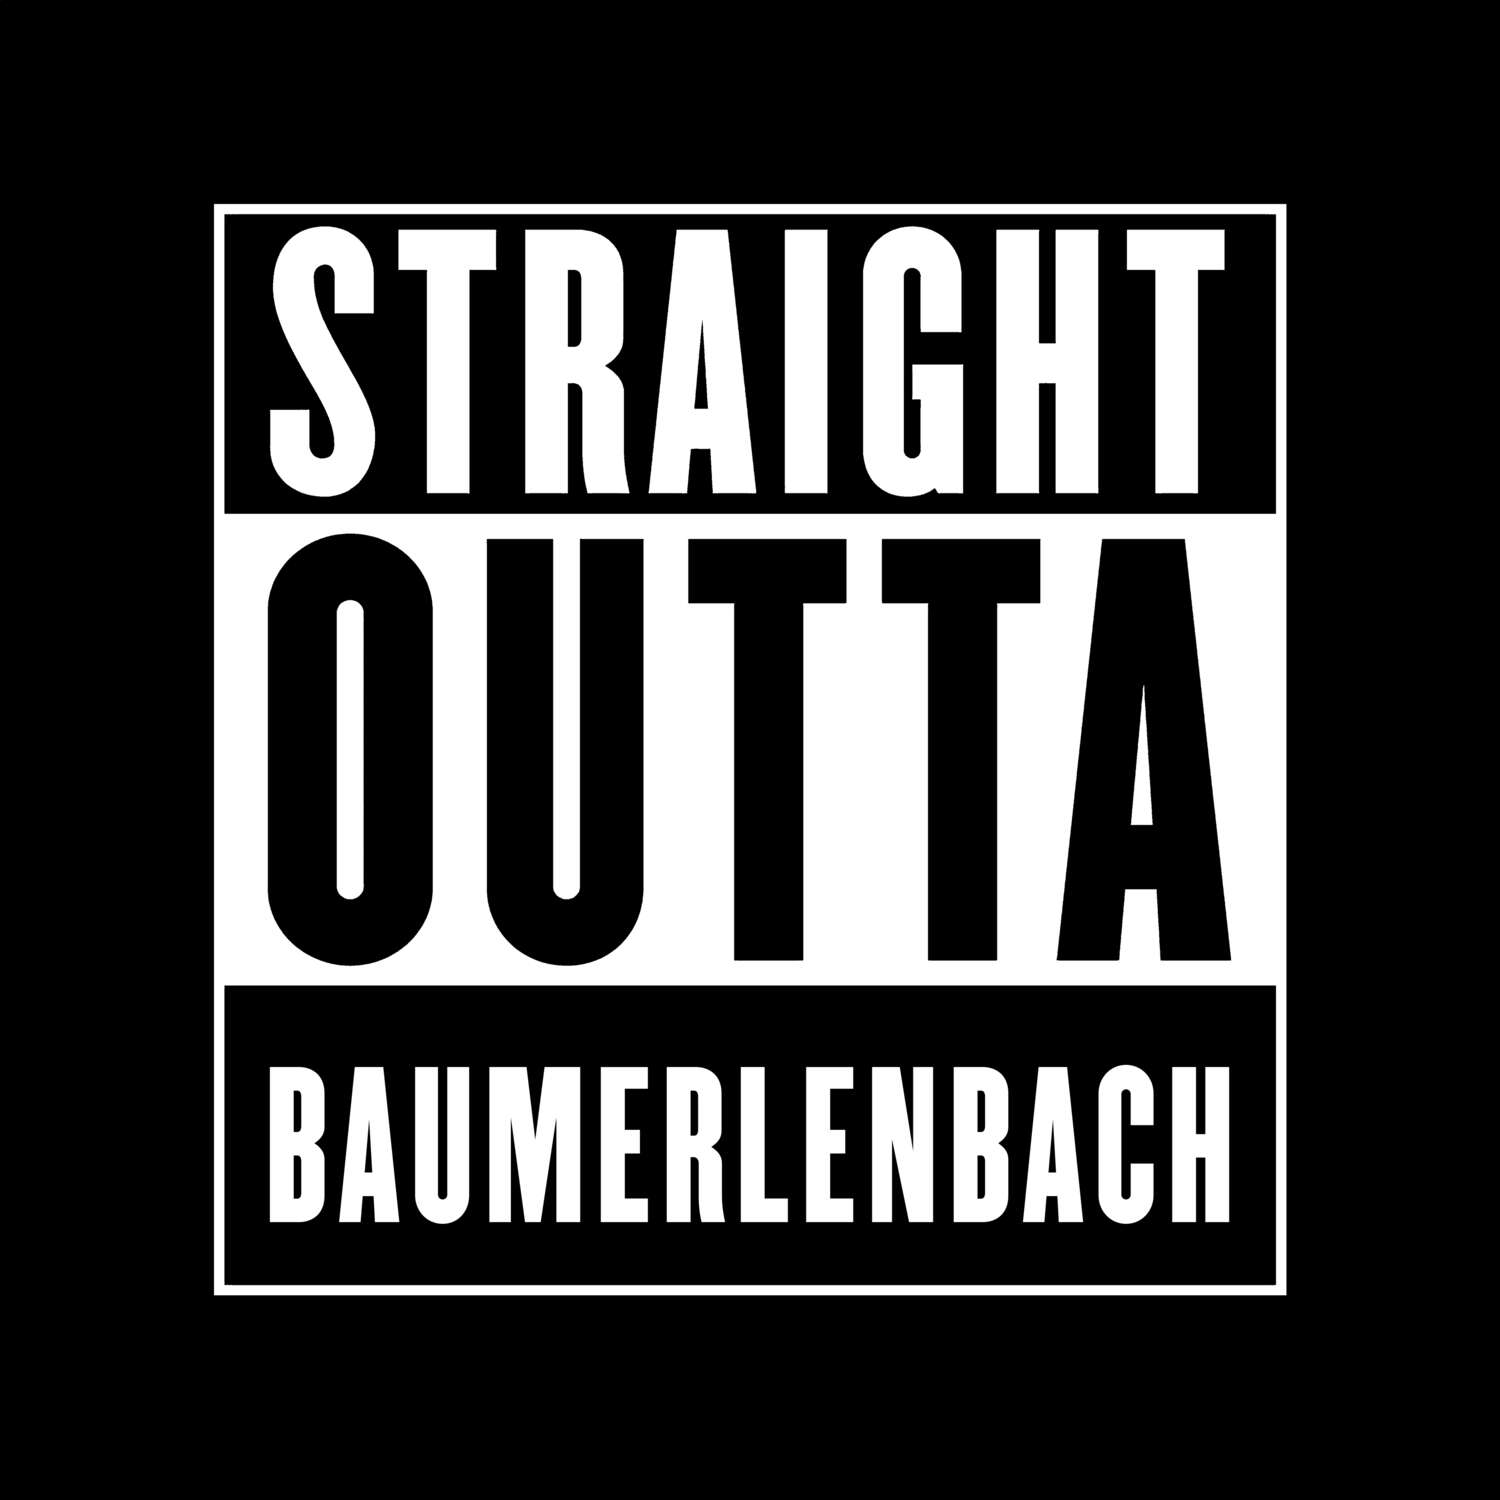 Baumerlenbach T-Shirt »Straight Outta«